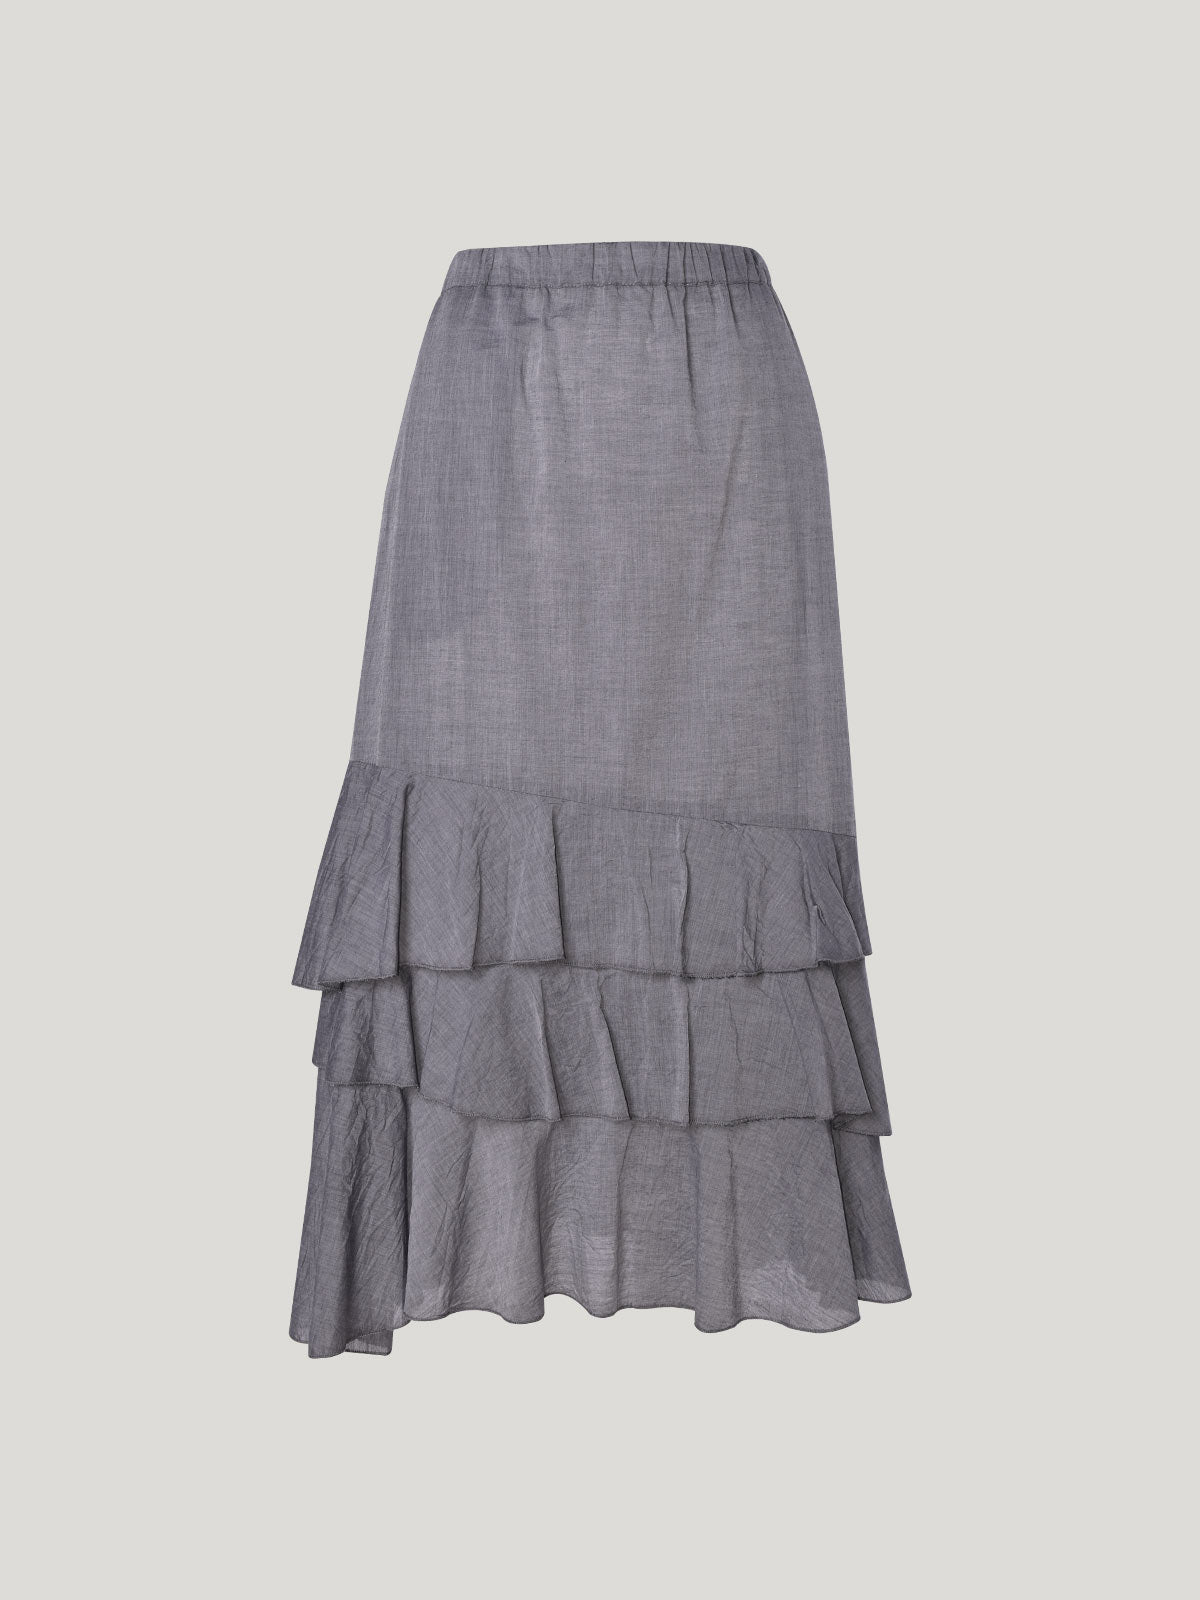 Rita Idaho Skirt